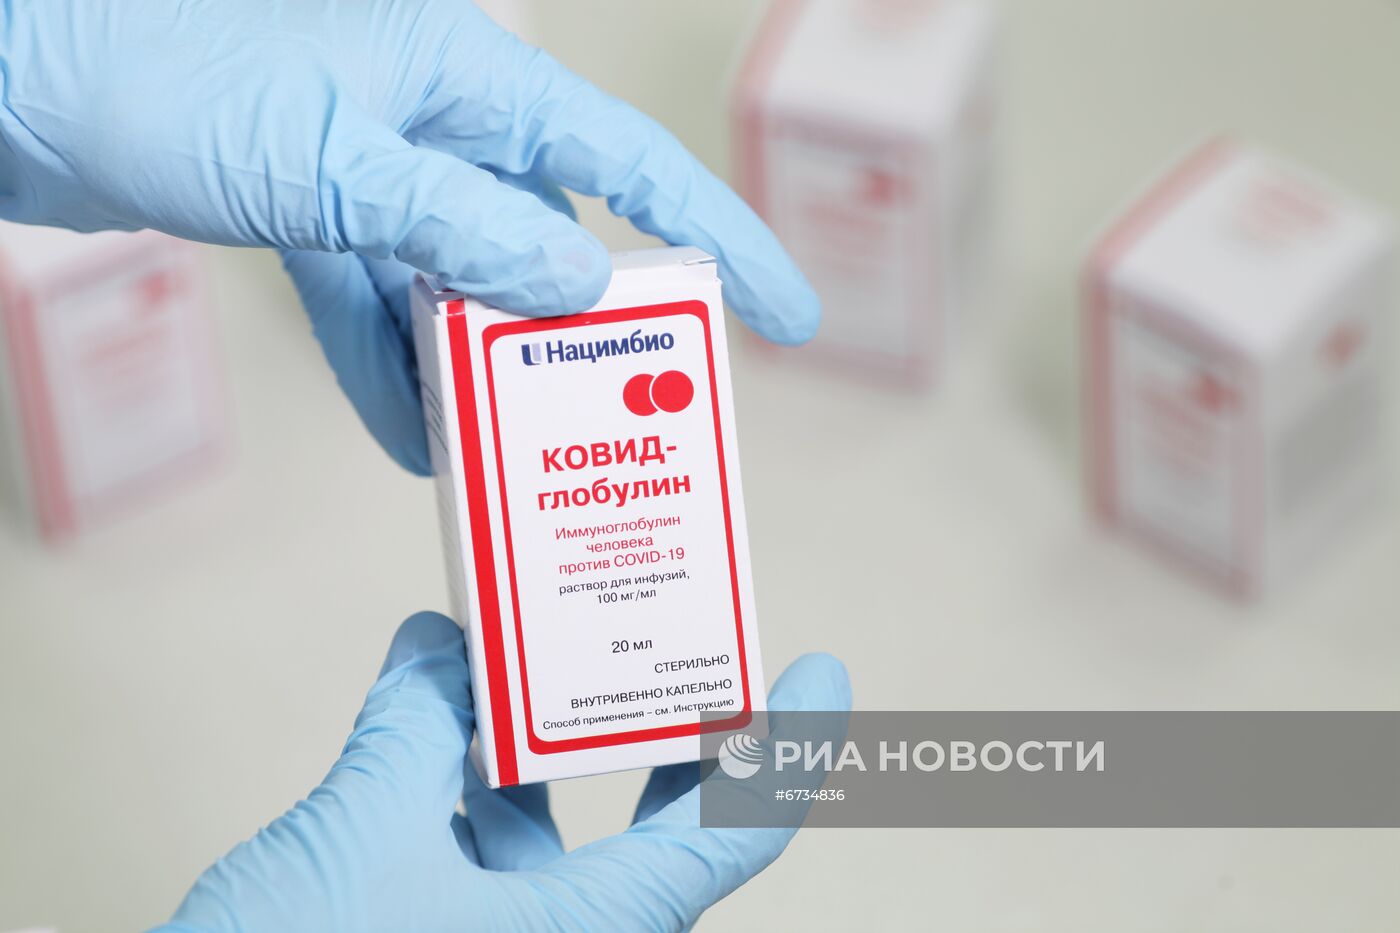 В России зарегистрировали препарат "КОВИД-глобулин"